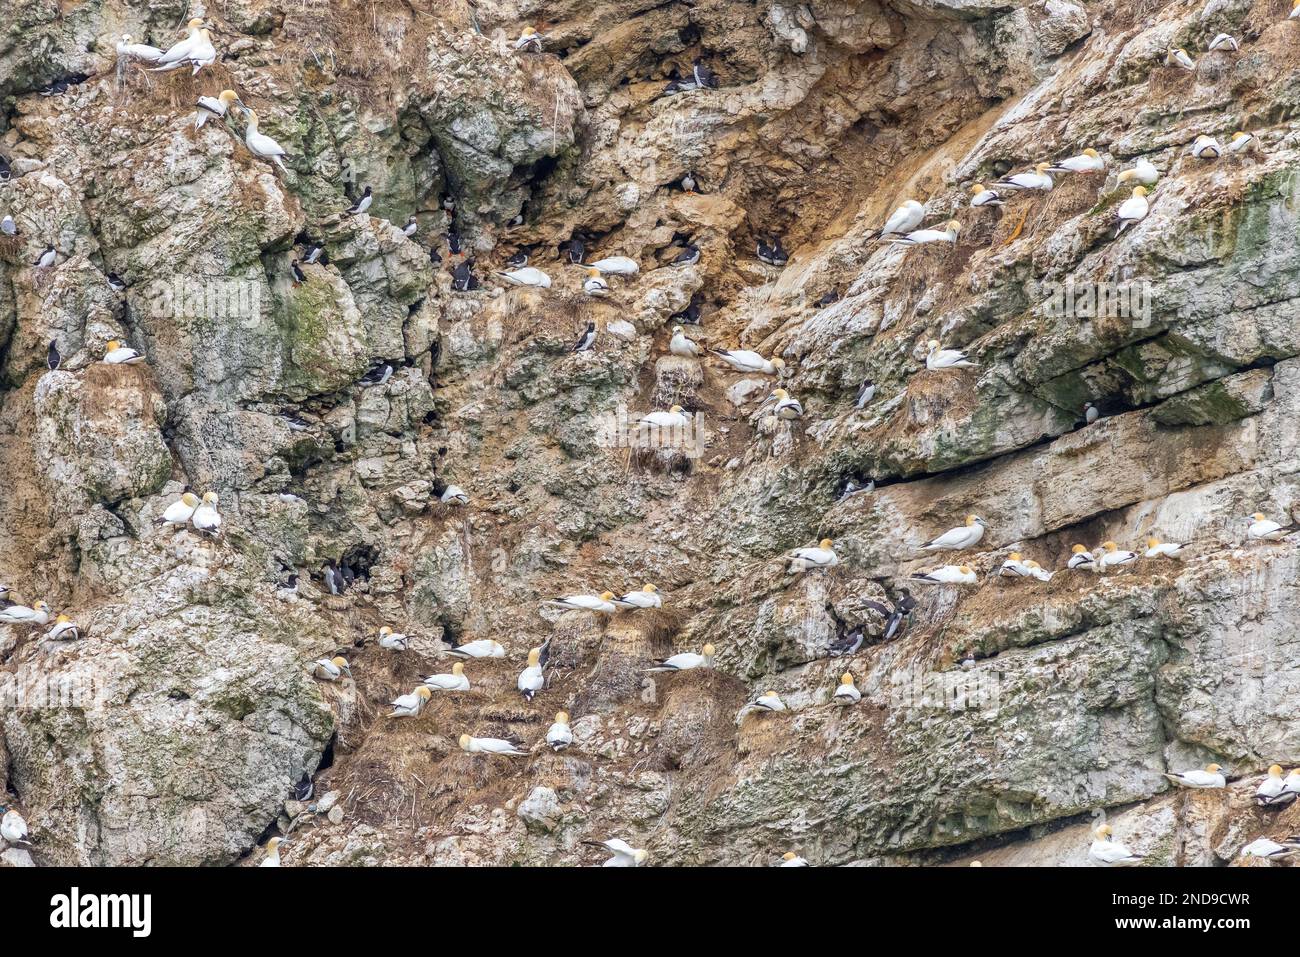 Seabird colony near bempton cliffs  on the Yorkshire coast Stock Photo